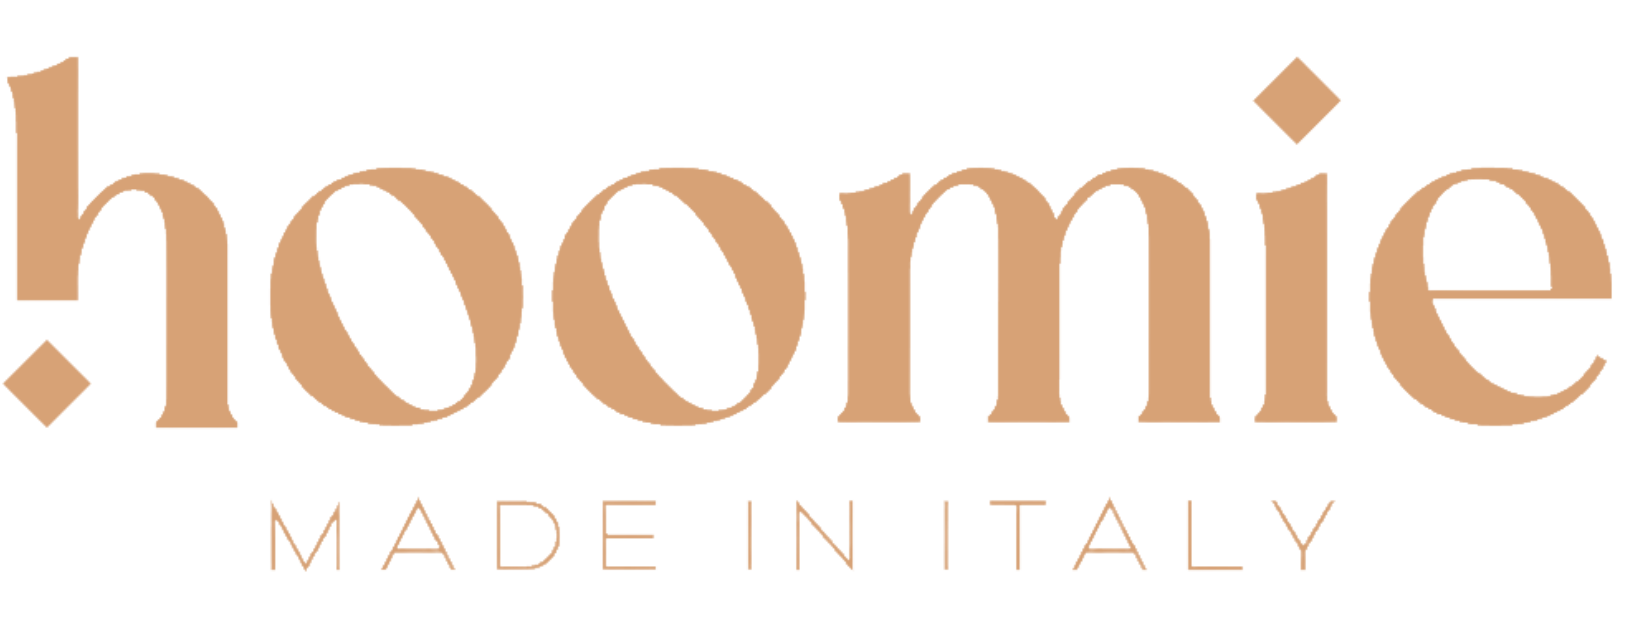 Hoomie logo